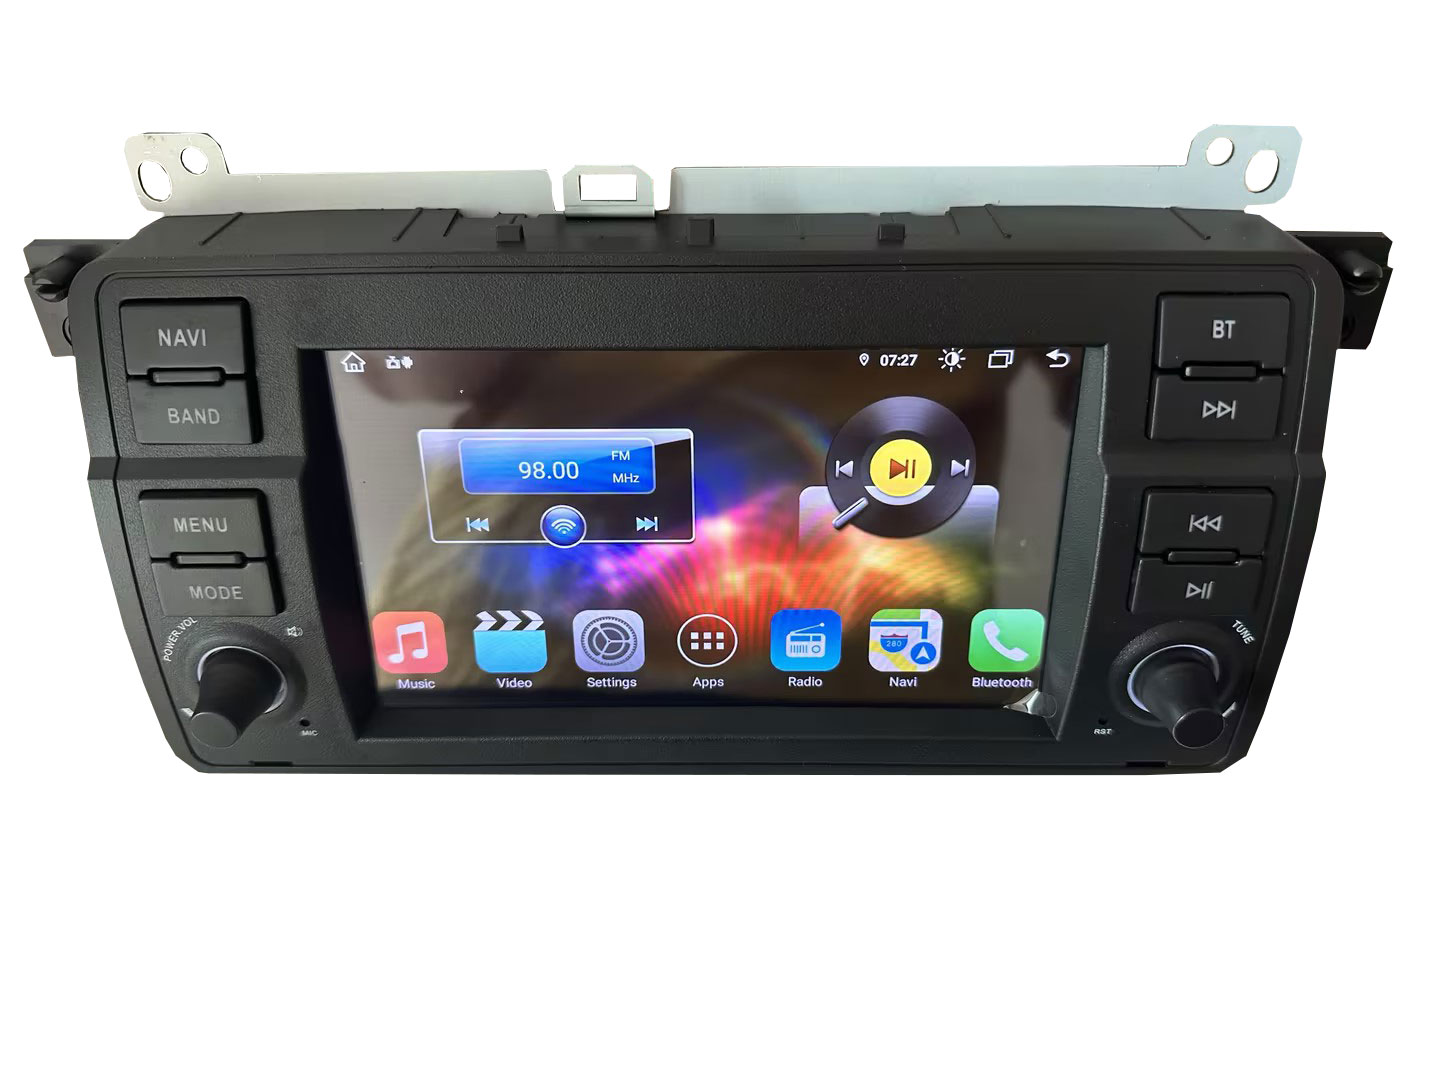 Radio Android -Bildschirm für BMW 3 E90 E91 E92 E93 M3